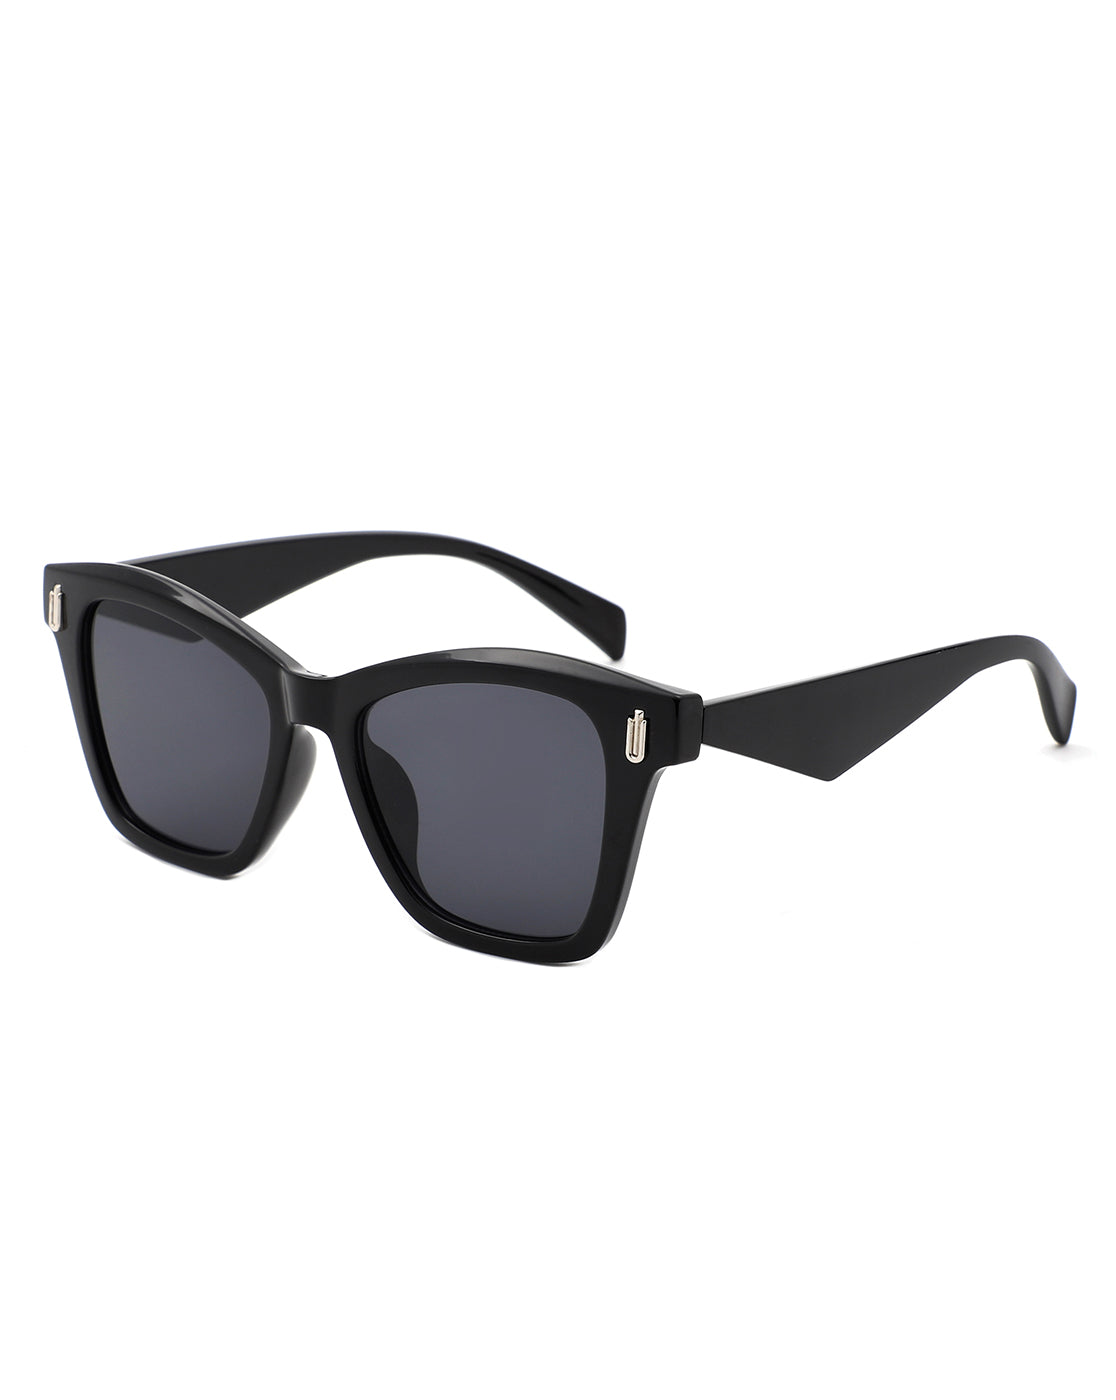 Eprye - Chic Cat Eye Square Women's Sunglasses